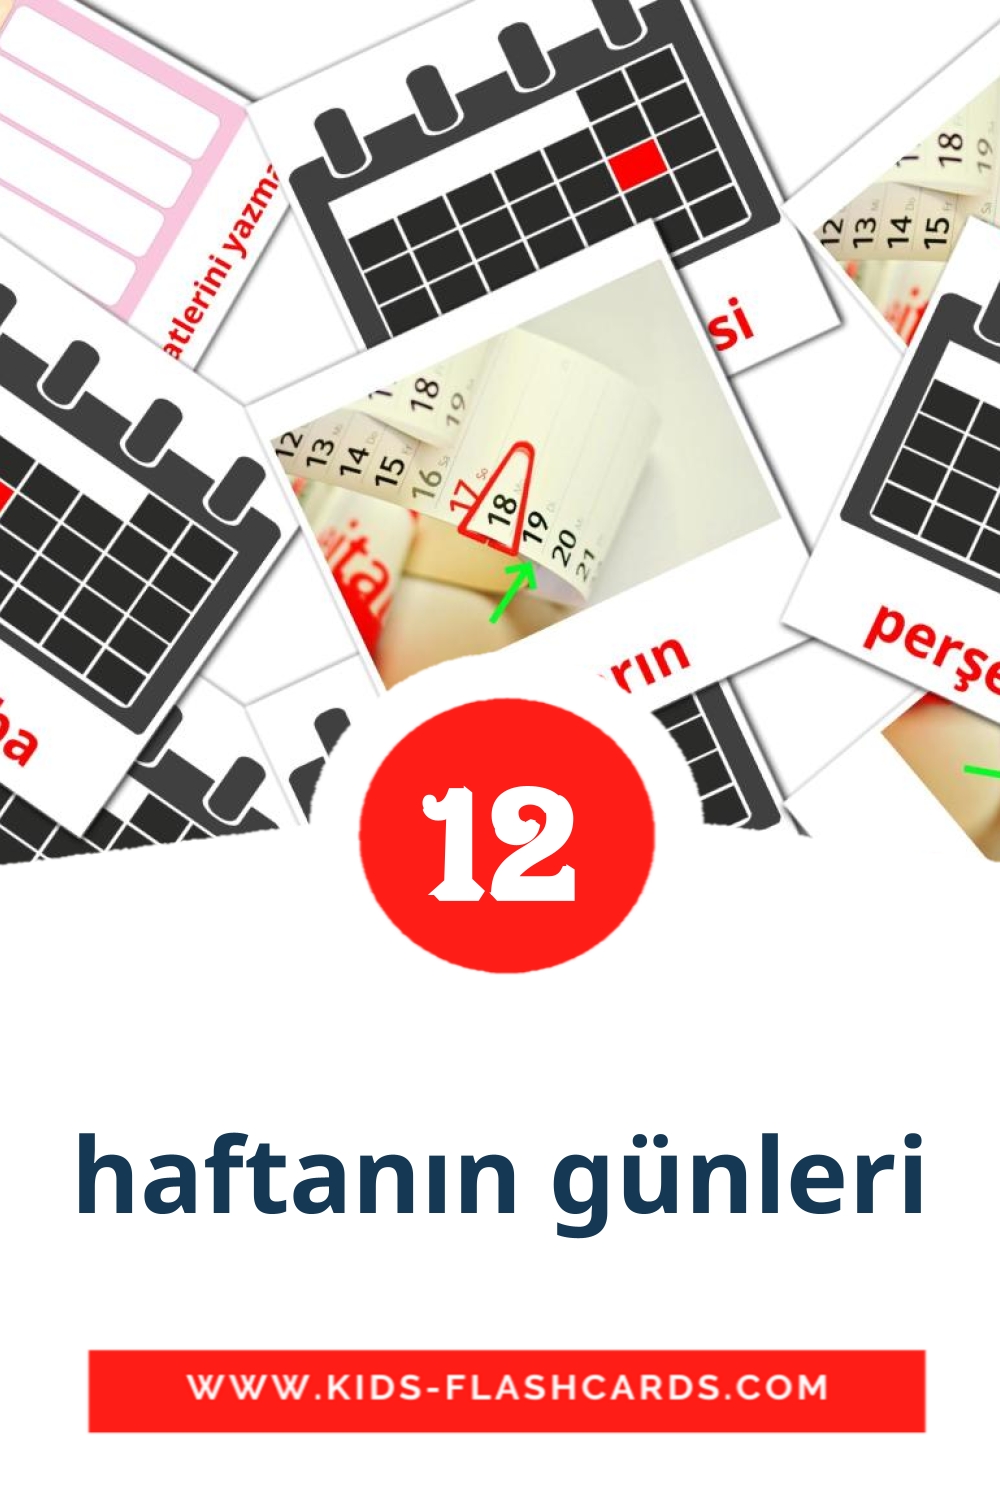 12 tarjetas didacticas de haftanın günleri para el jardín de infancia en turco